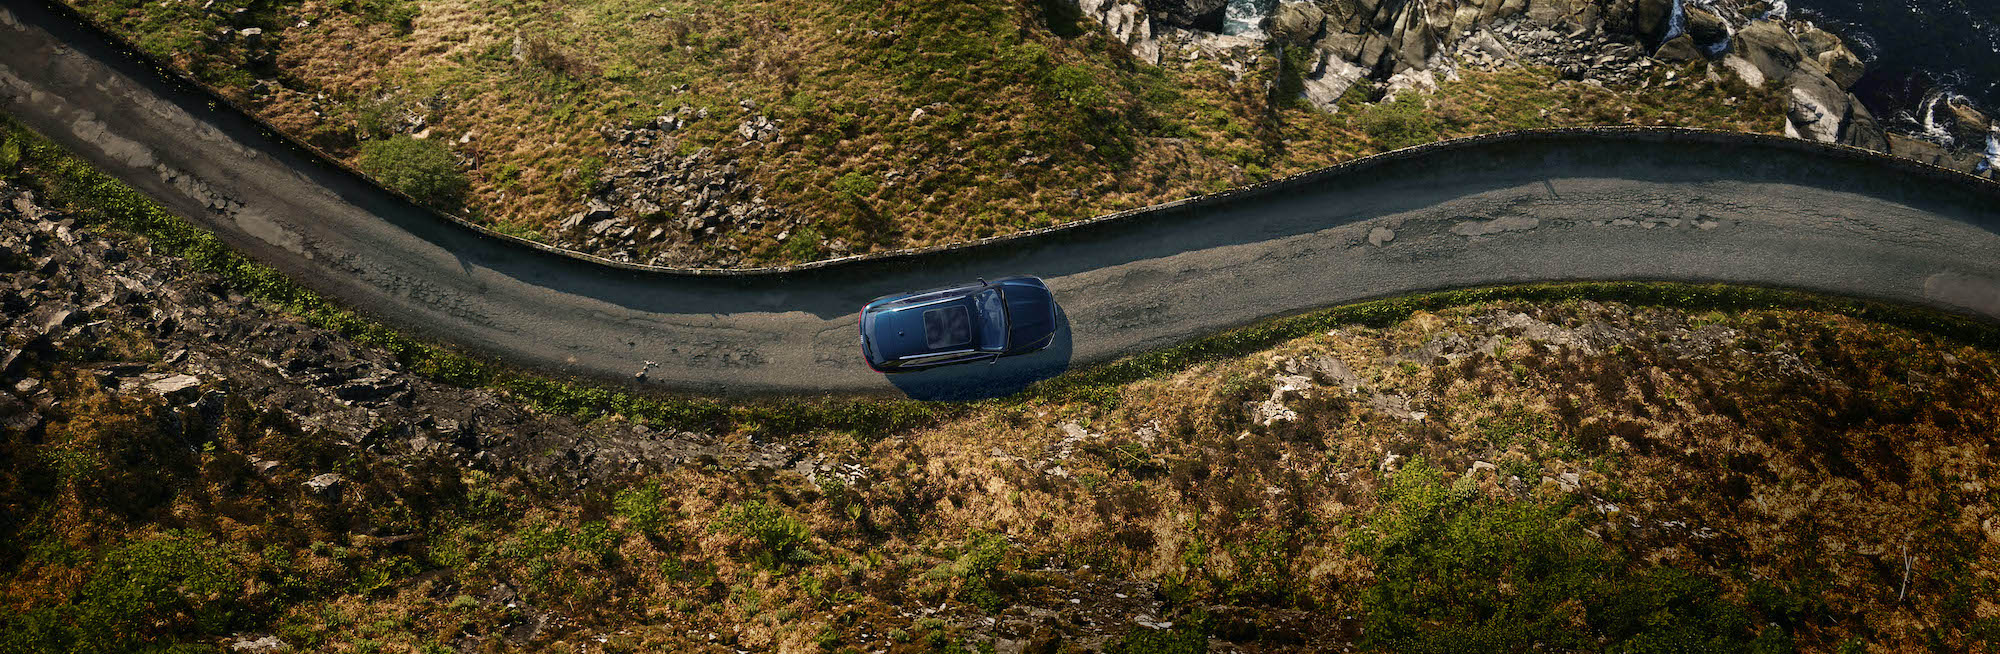 Terenec Audi na vijugasti gorski cesti, slikan od zgoraj